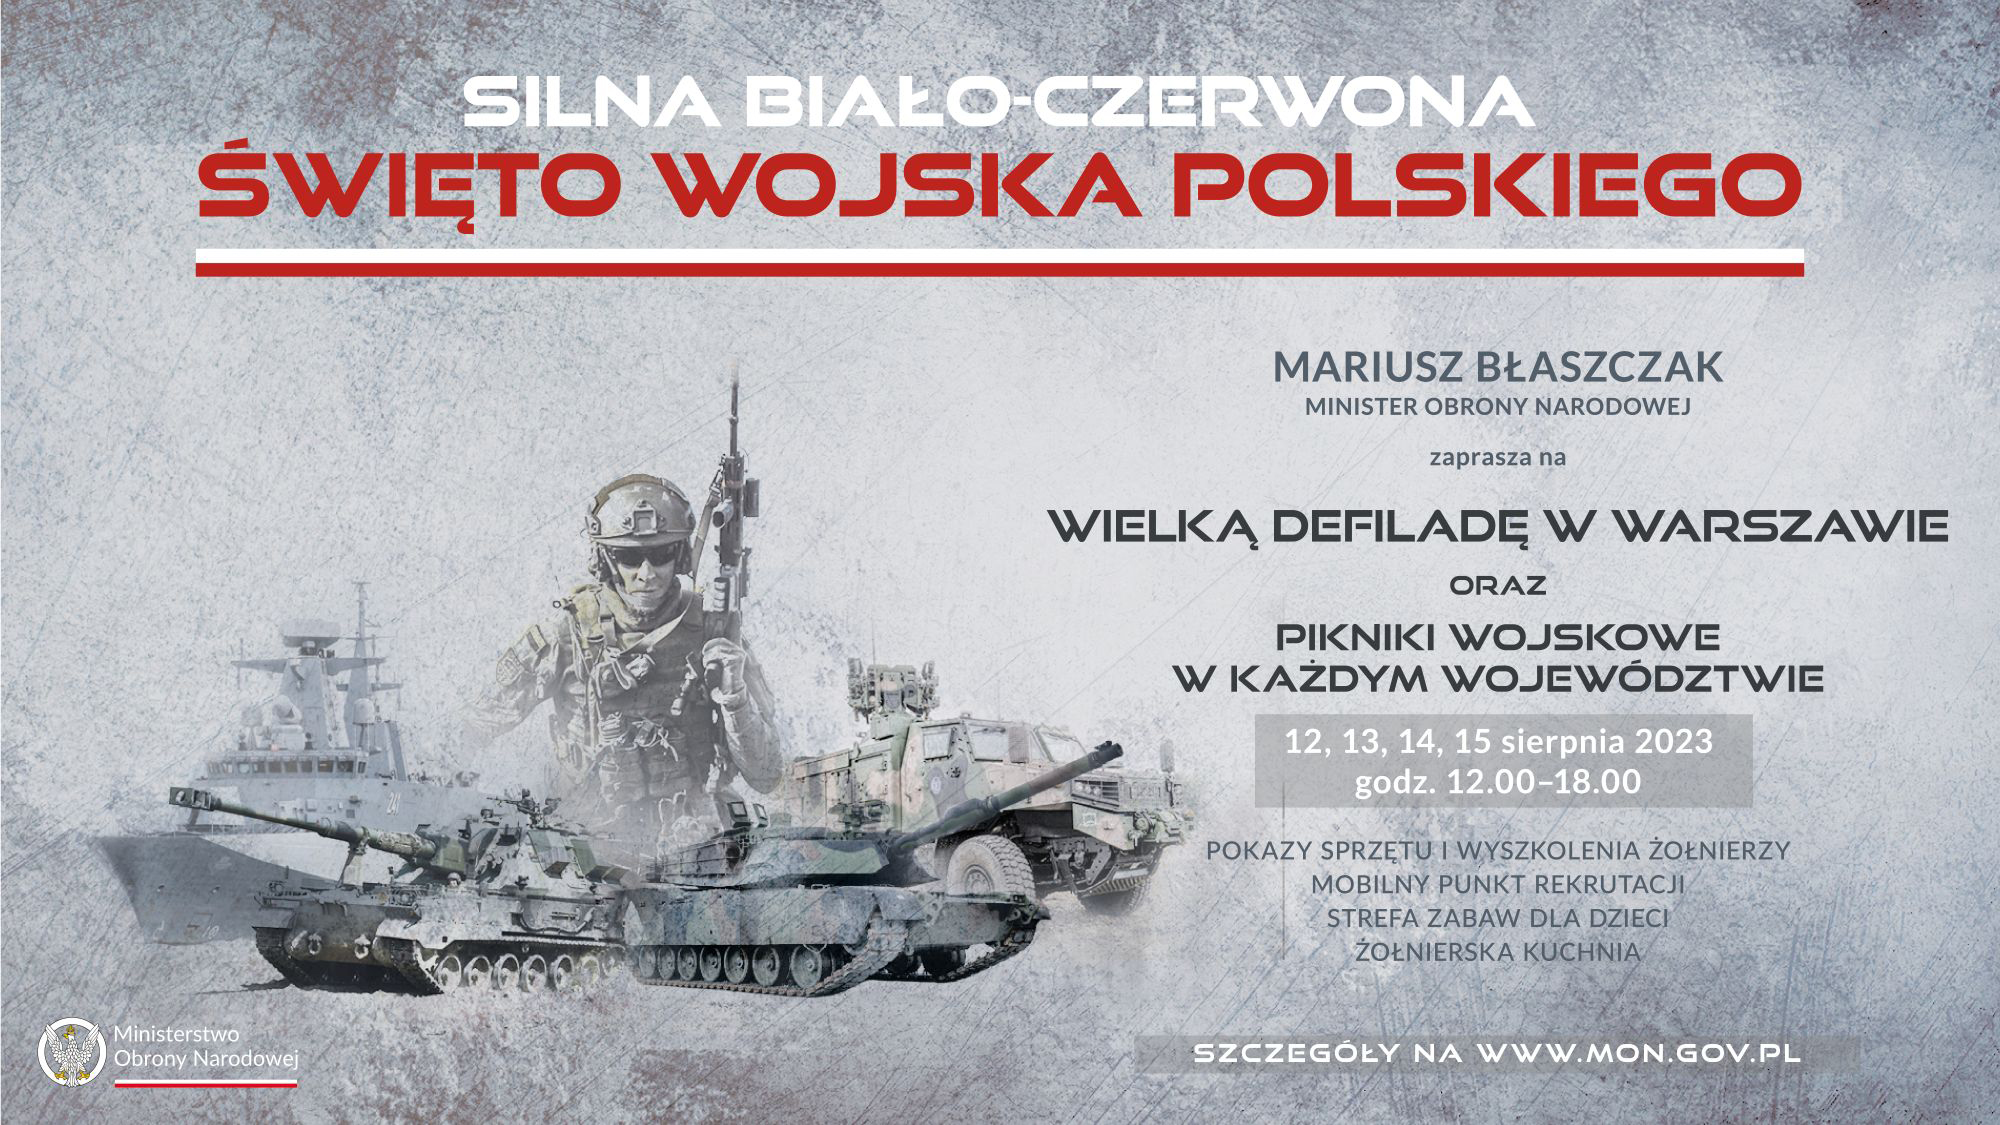 ŚWIĘTO WOJSKA POLSKIEGO - wojskowe pikniki - 12 sierpnia